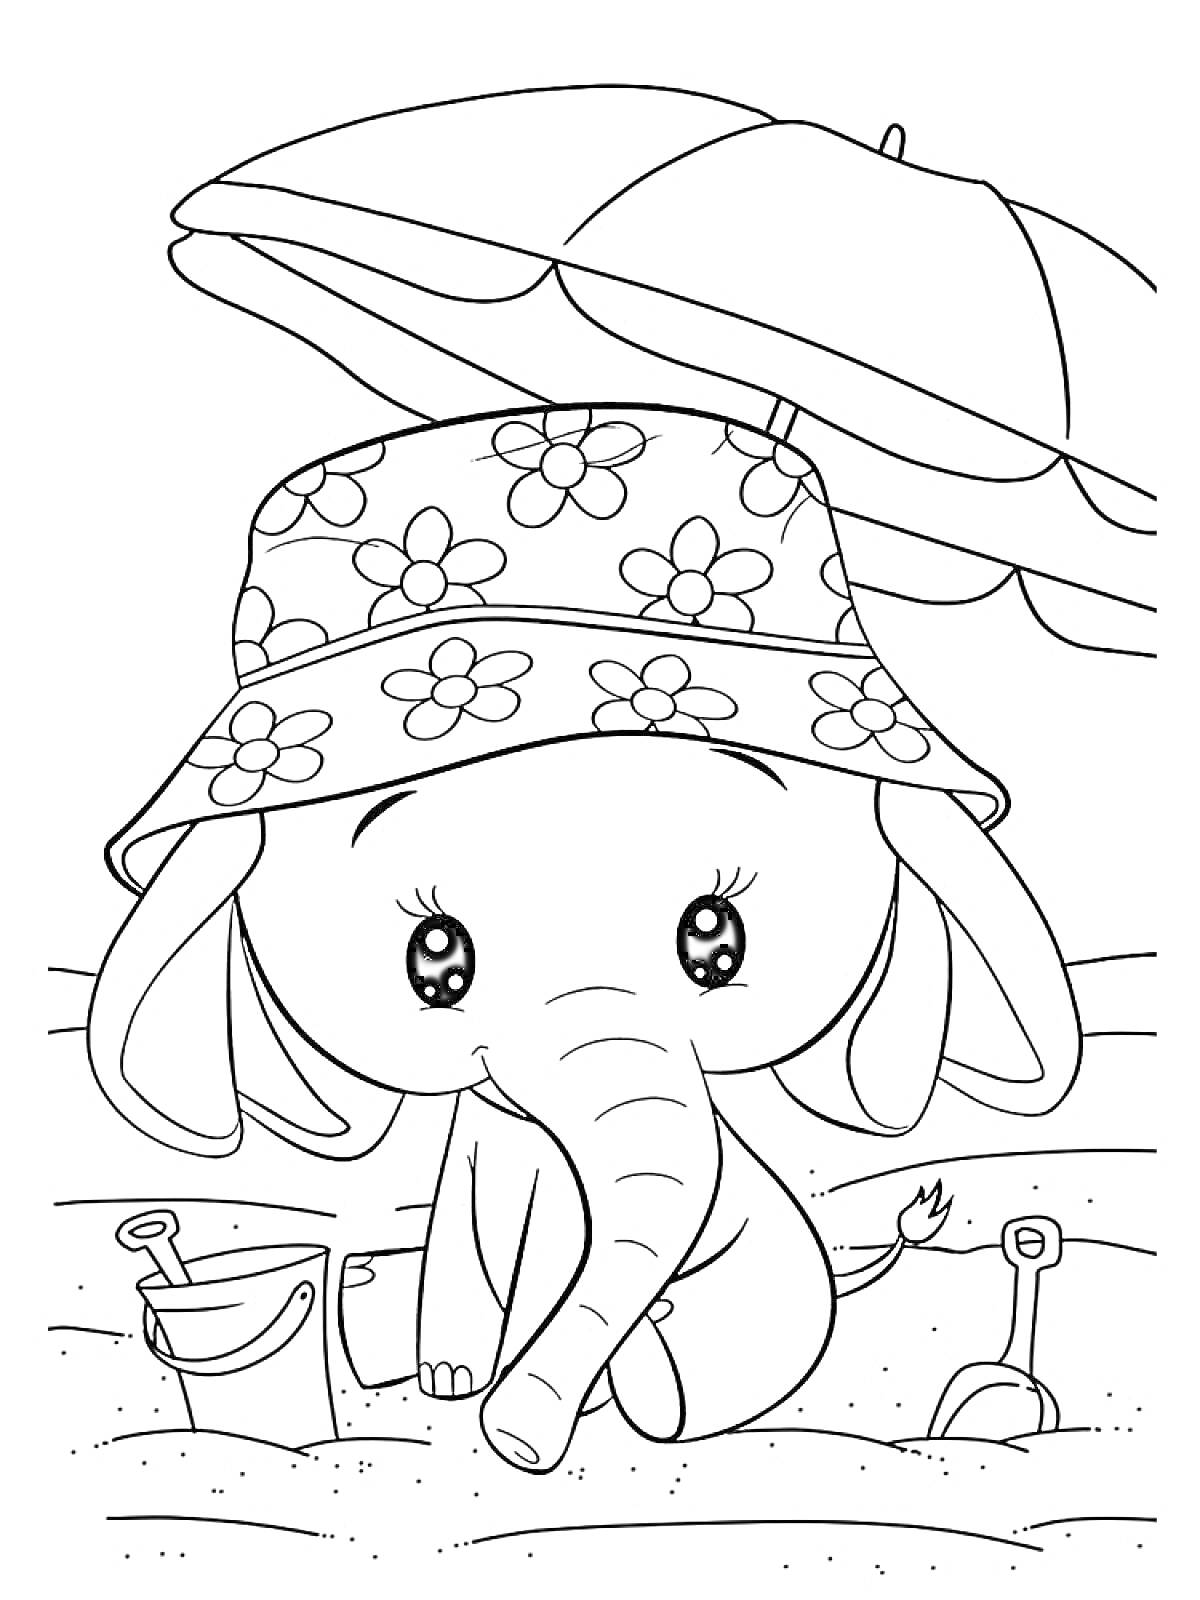 Слонёнок в панамке на пляже с зонтиком, ведёрком и лопатками